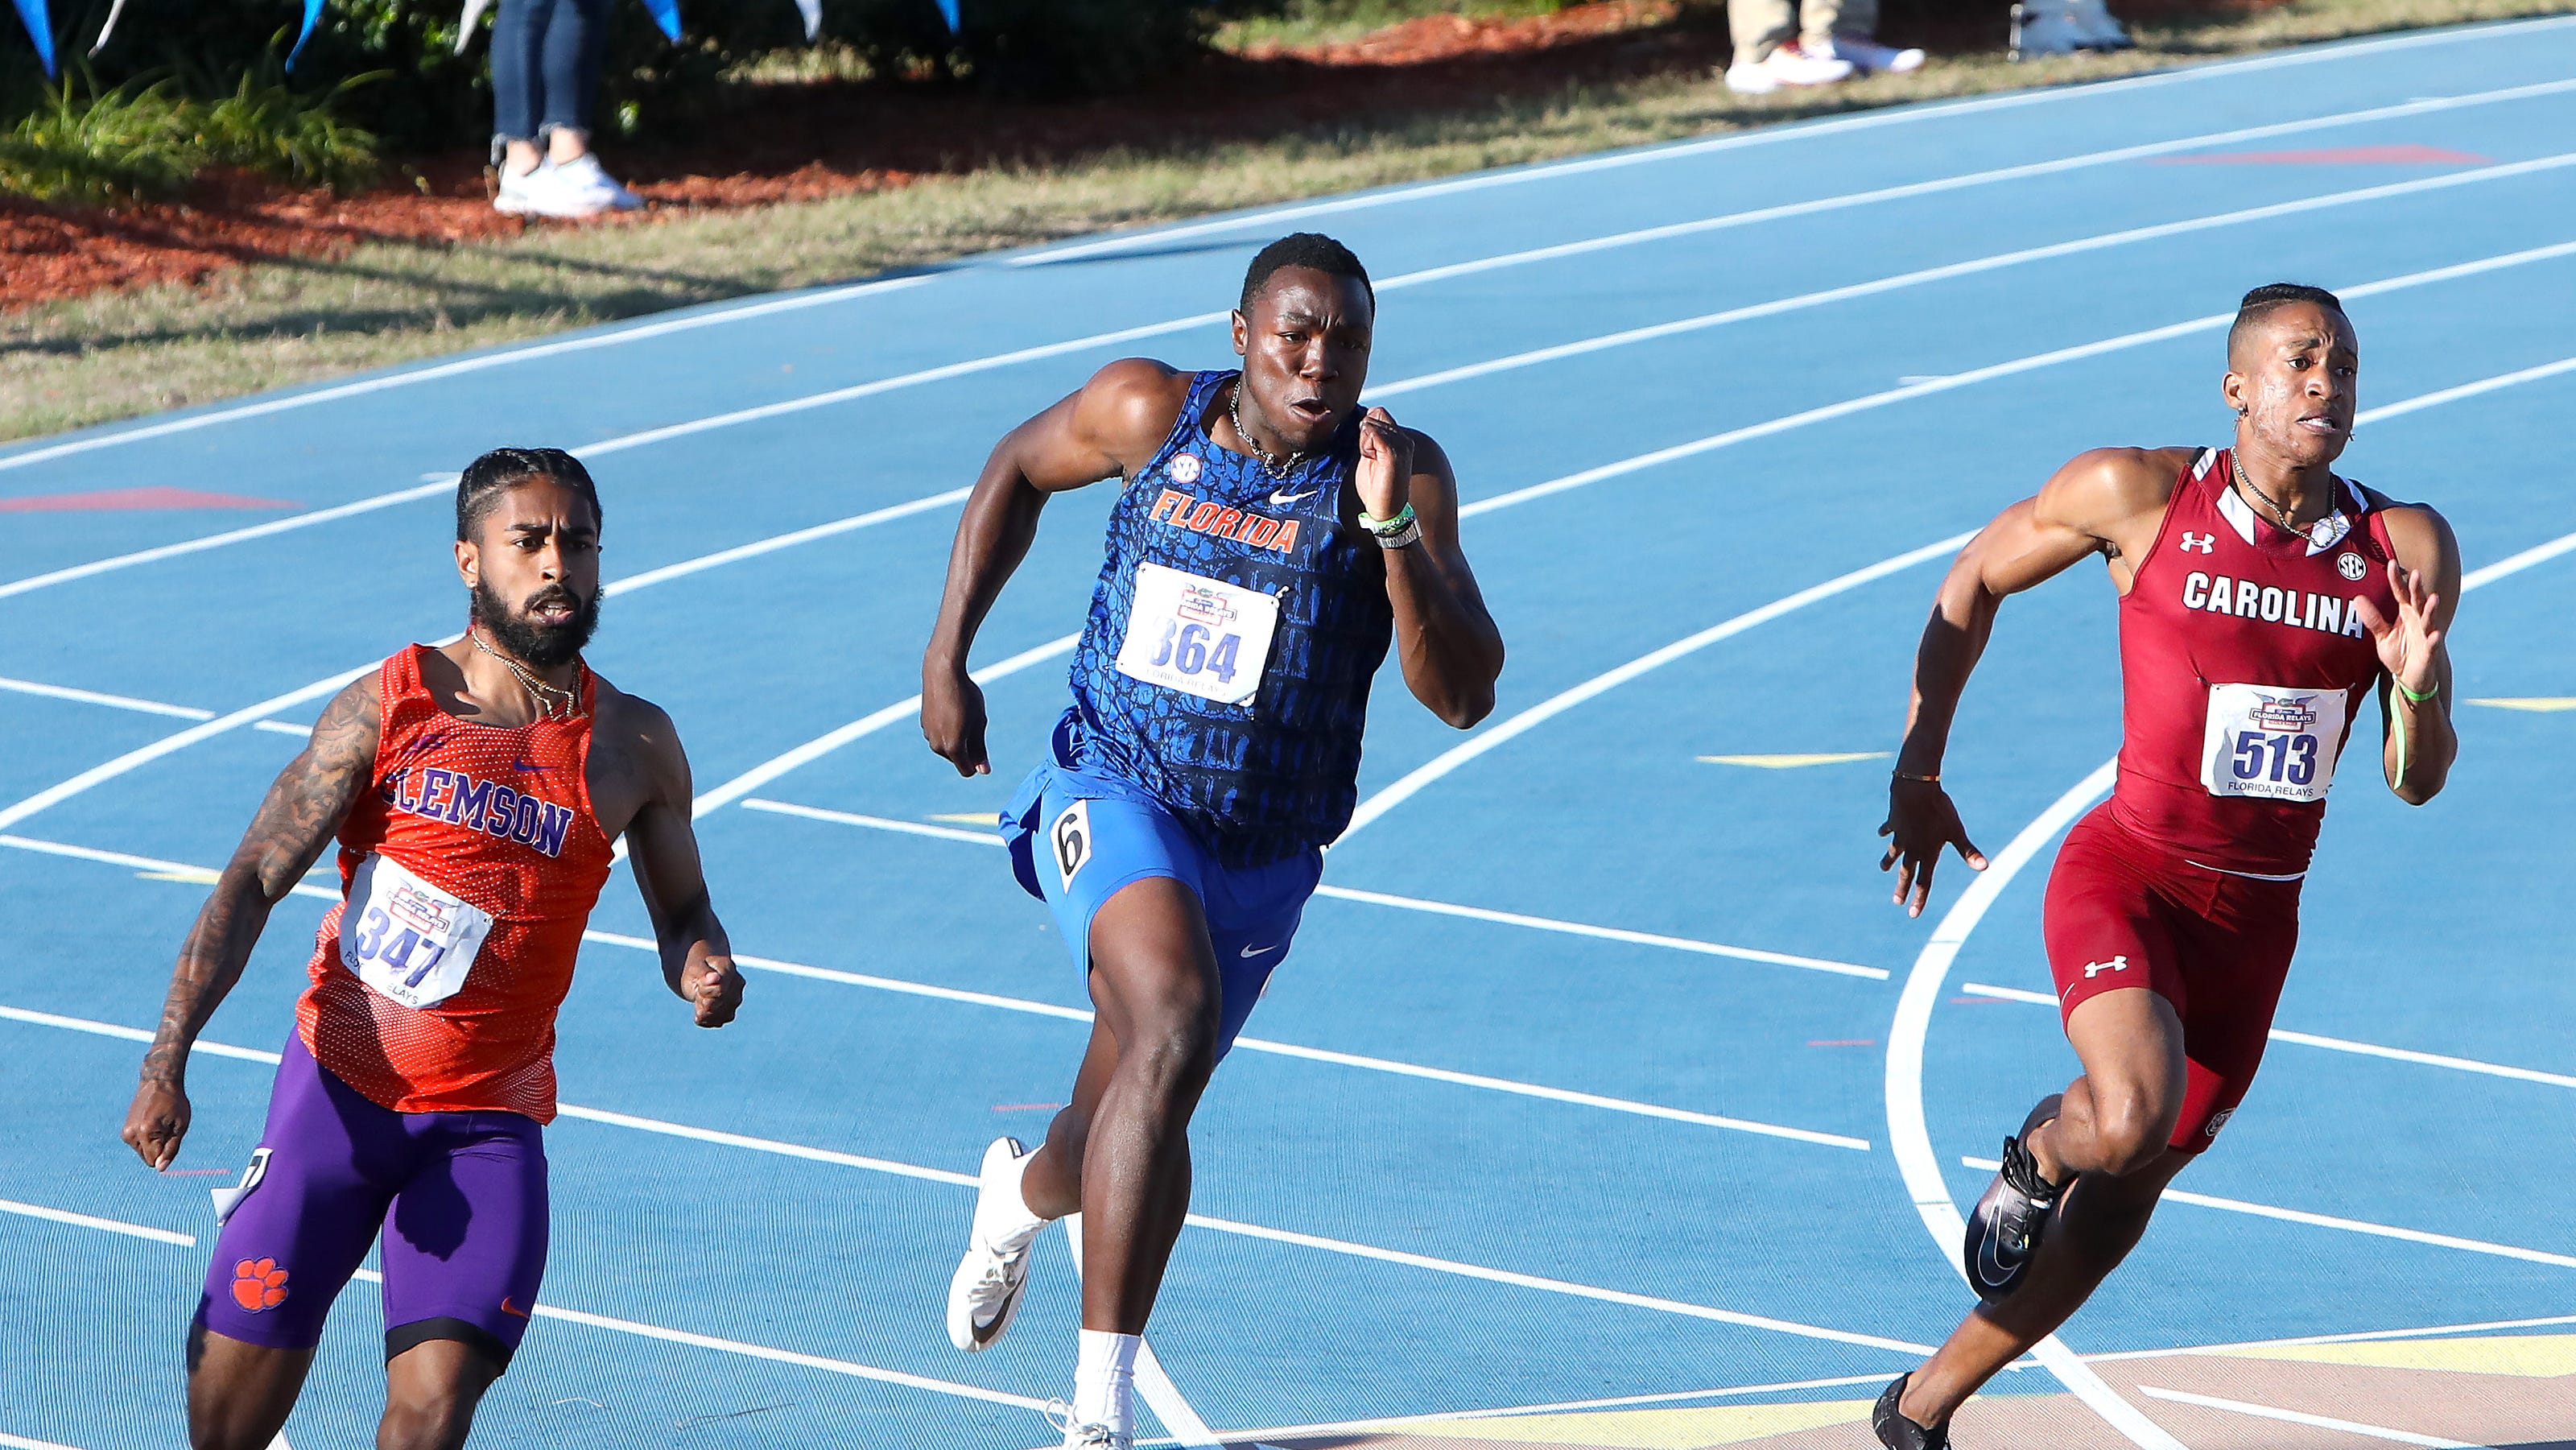 Florida athletes produce top times, distances at Florida Relays